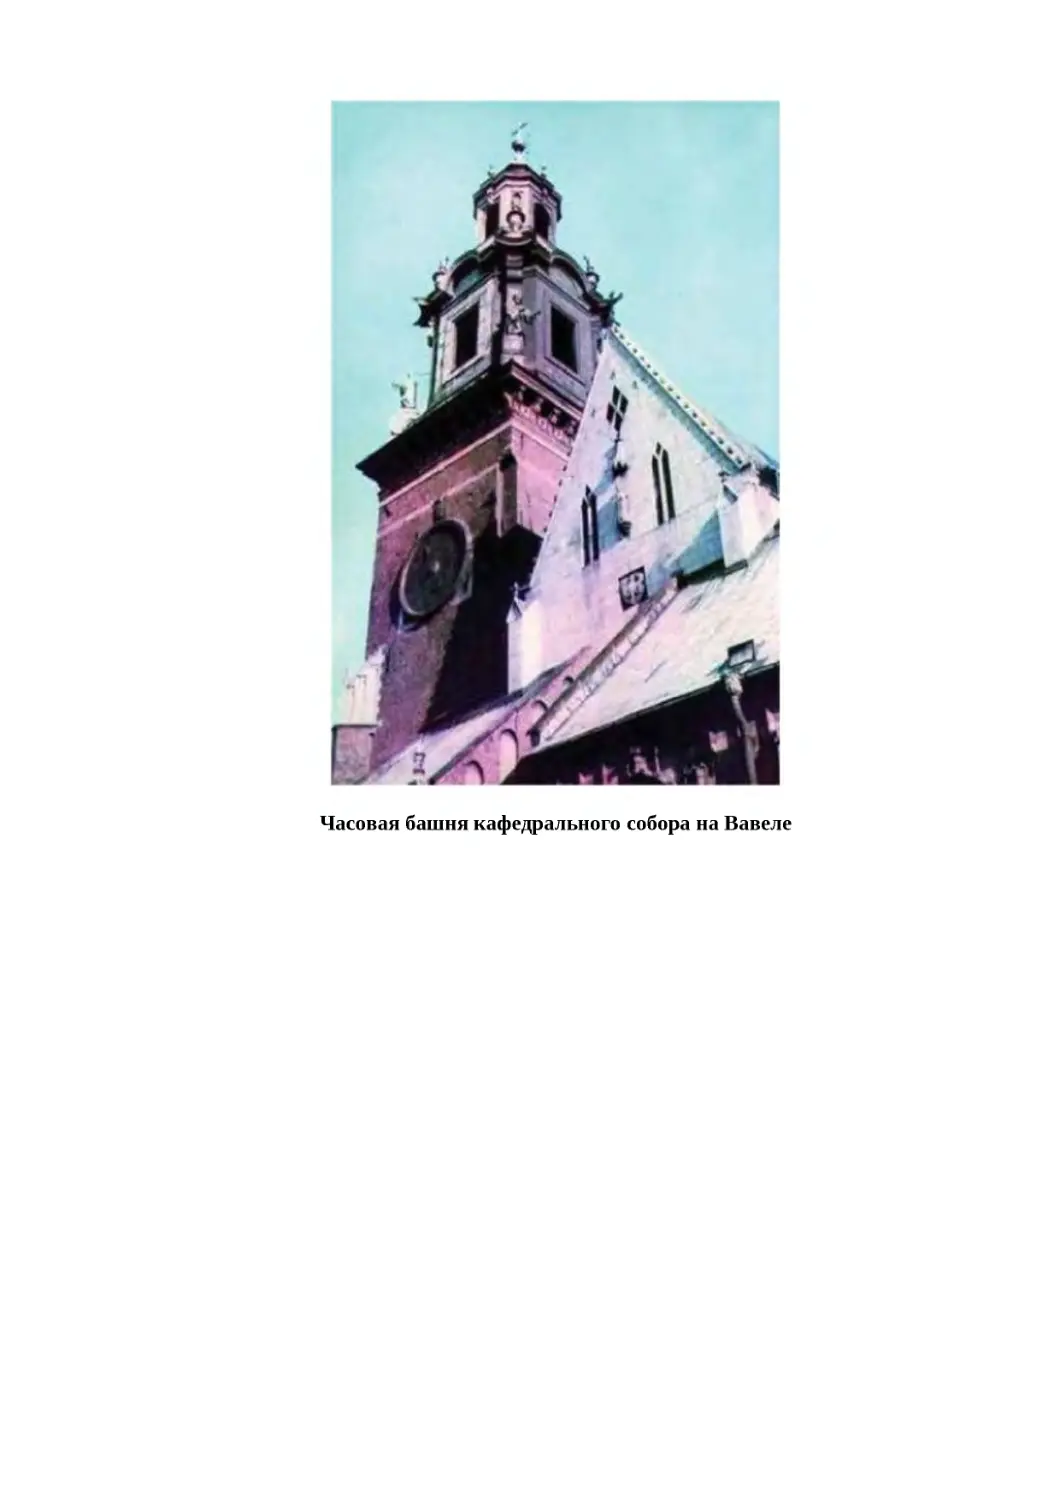 "
﻿Часовая башня кафедрального собора на Вавел